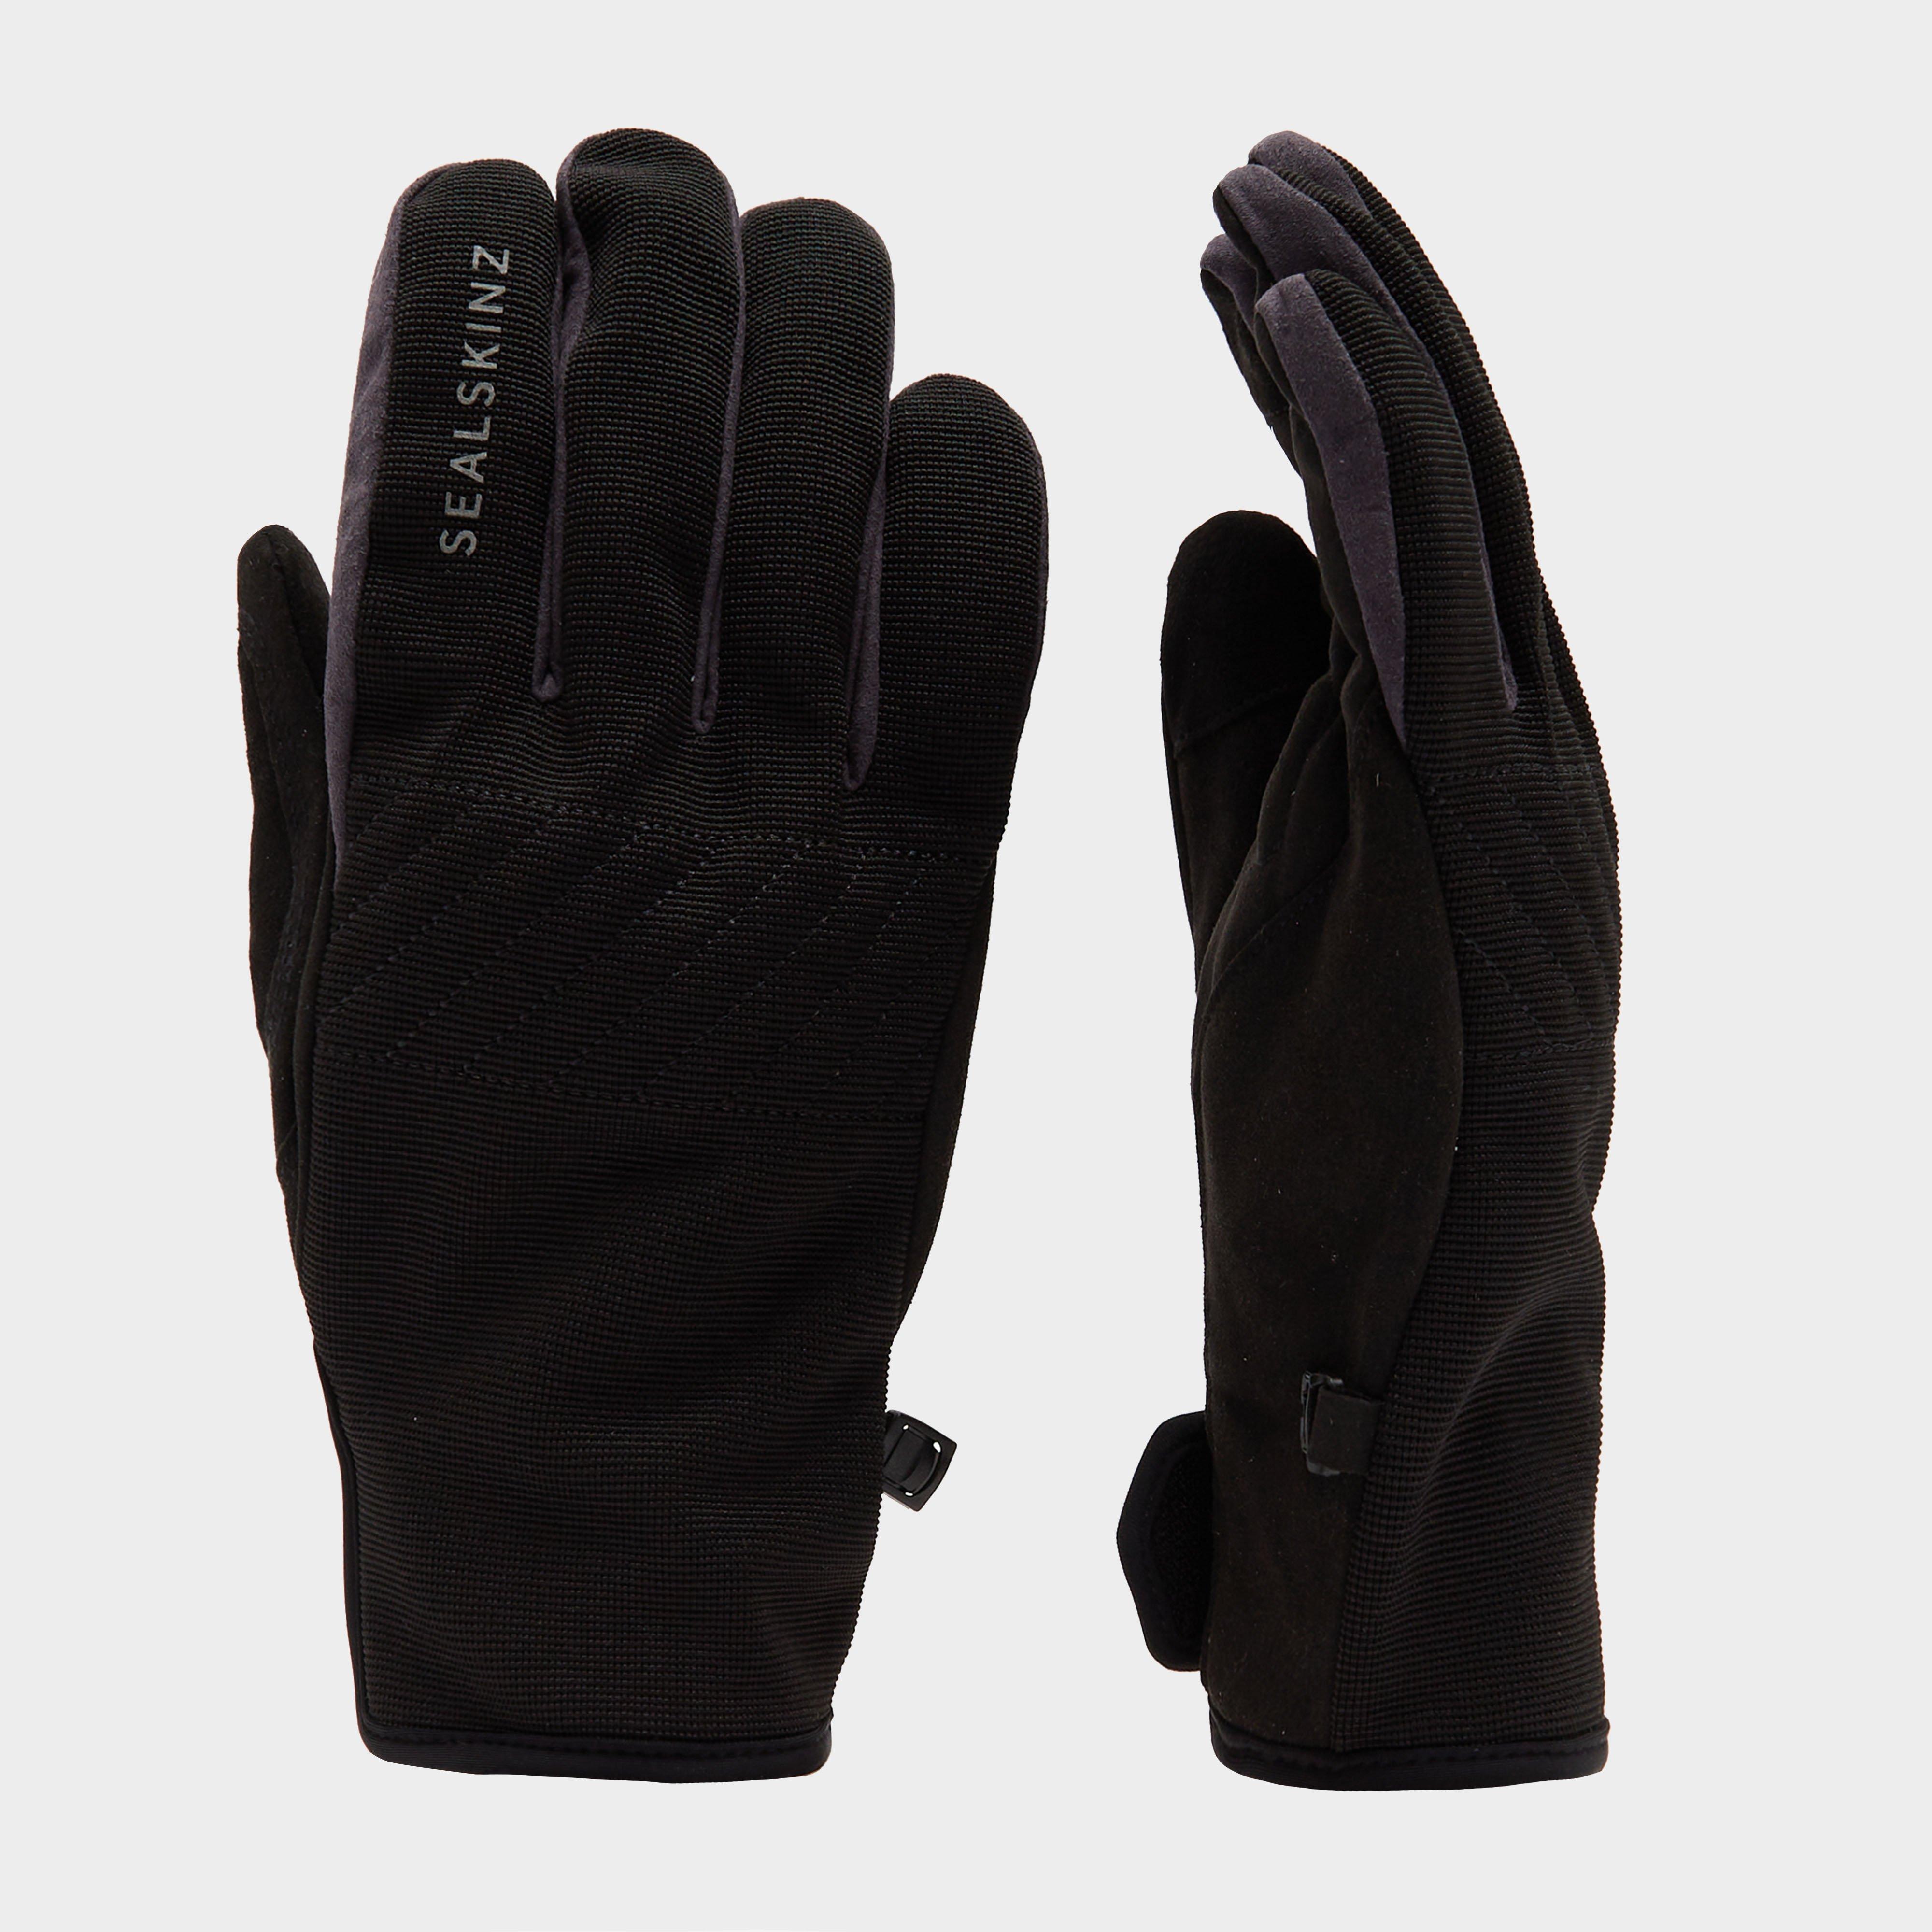 Sealskinz Multi Activity Glove - Black/glove  Black/glove